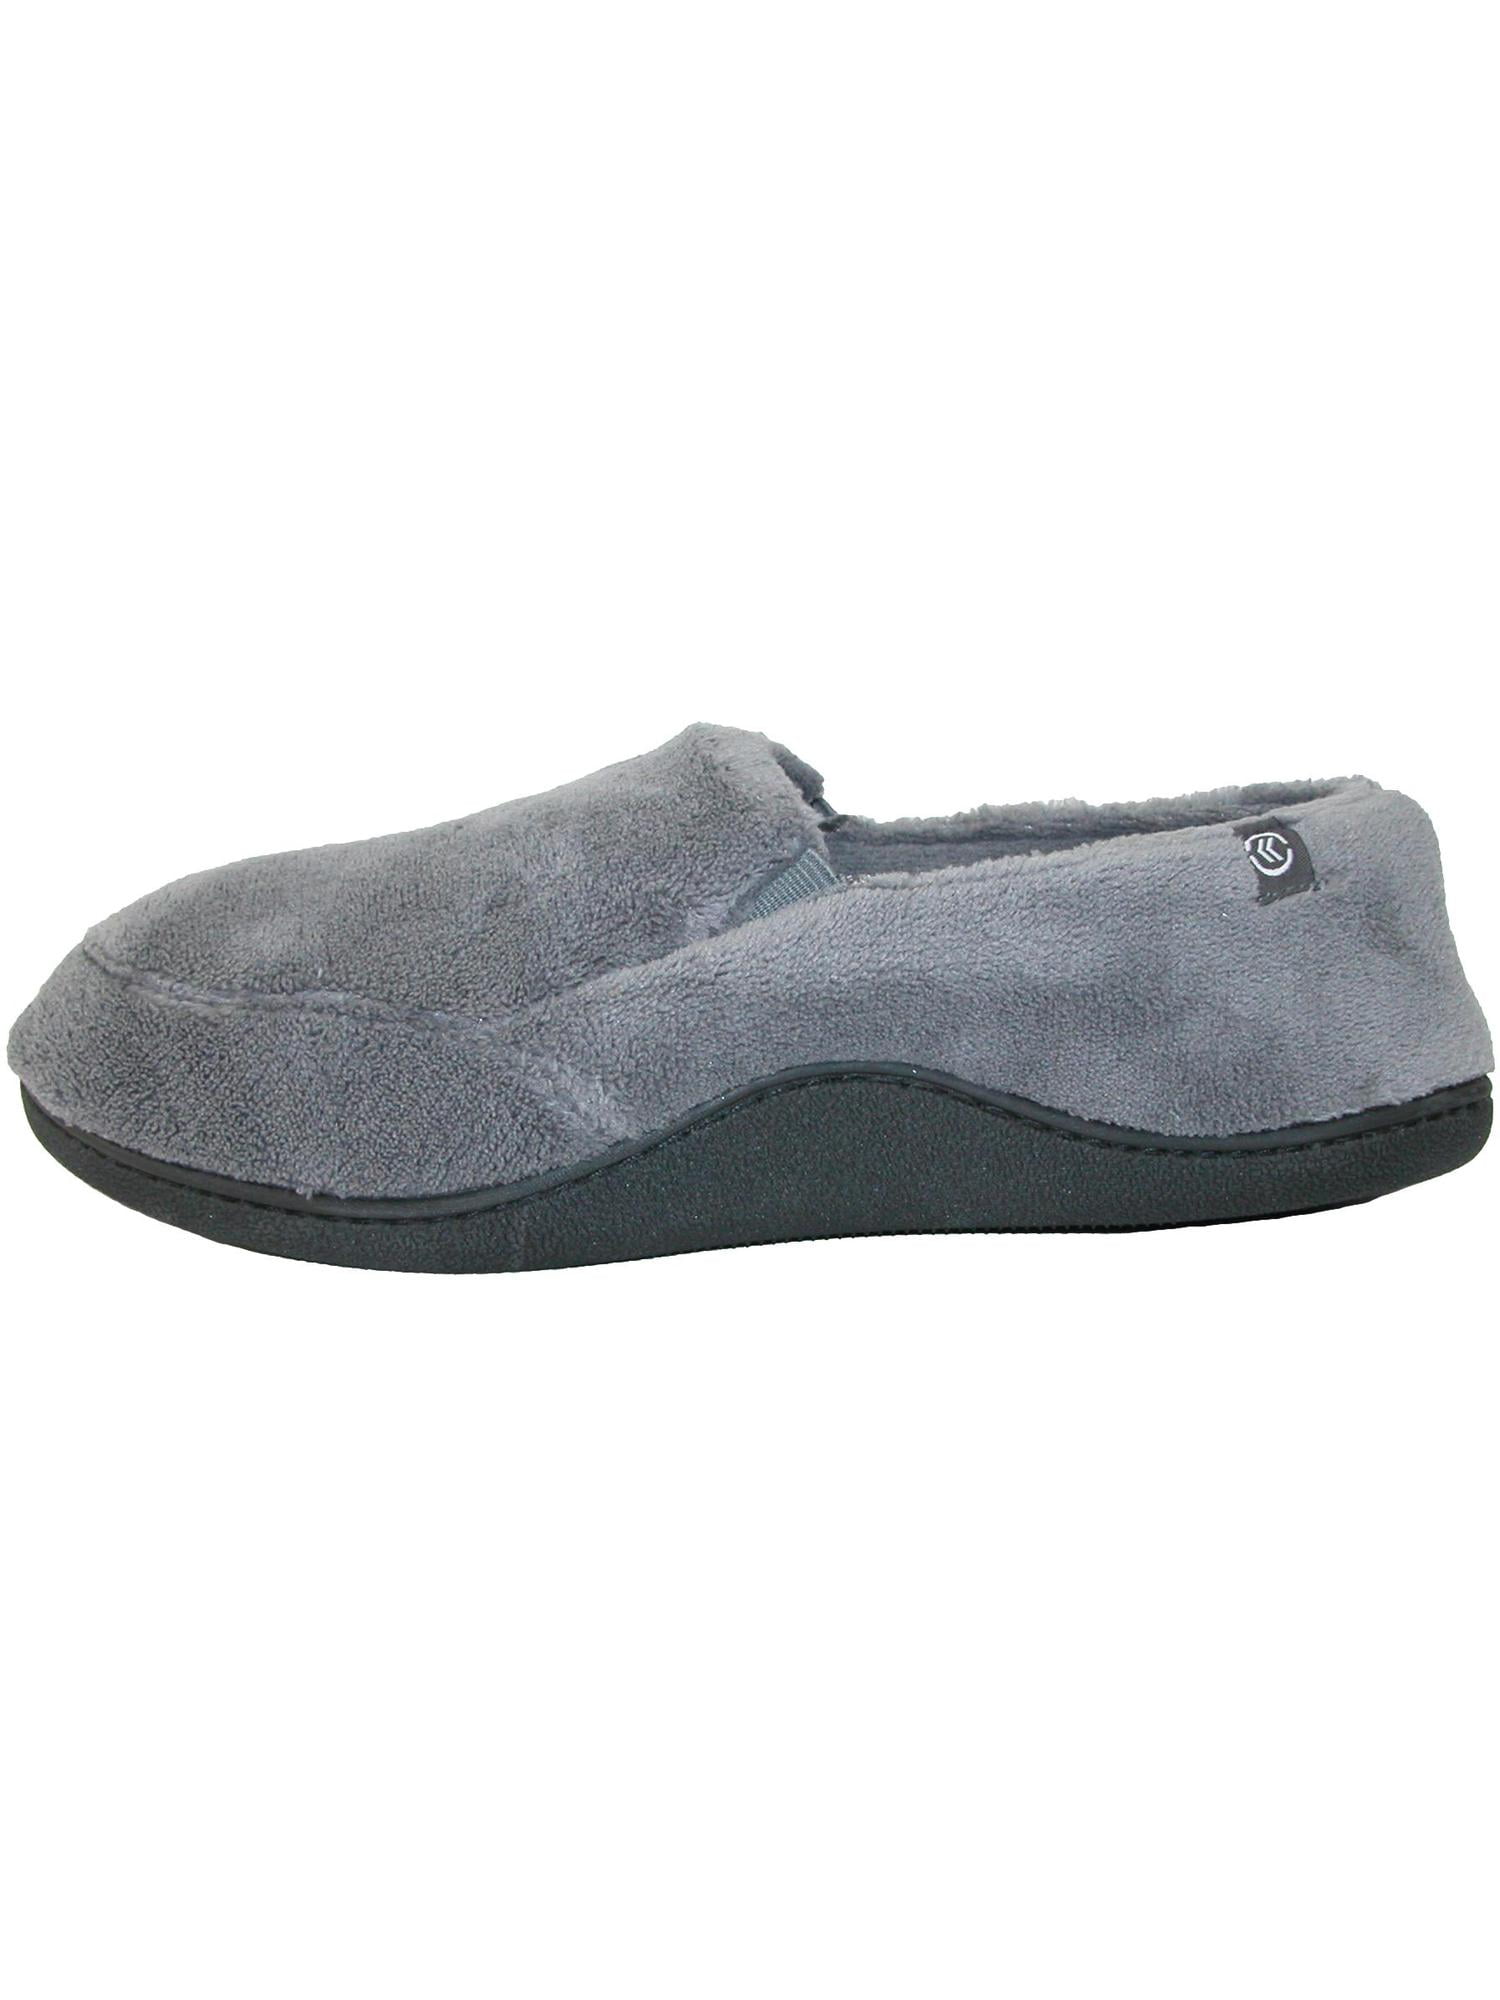 isotoner slip on slippers